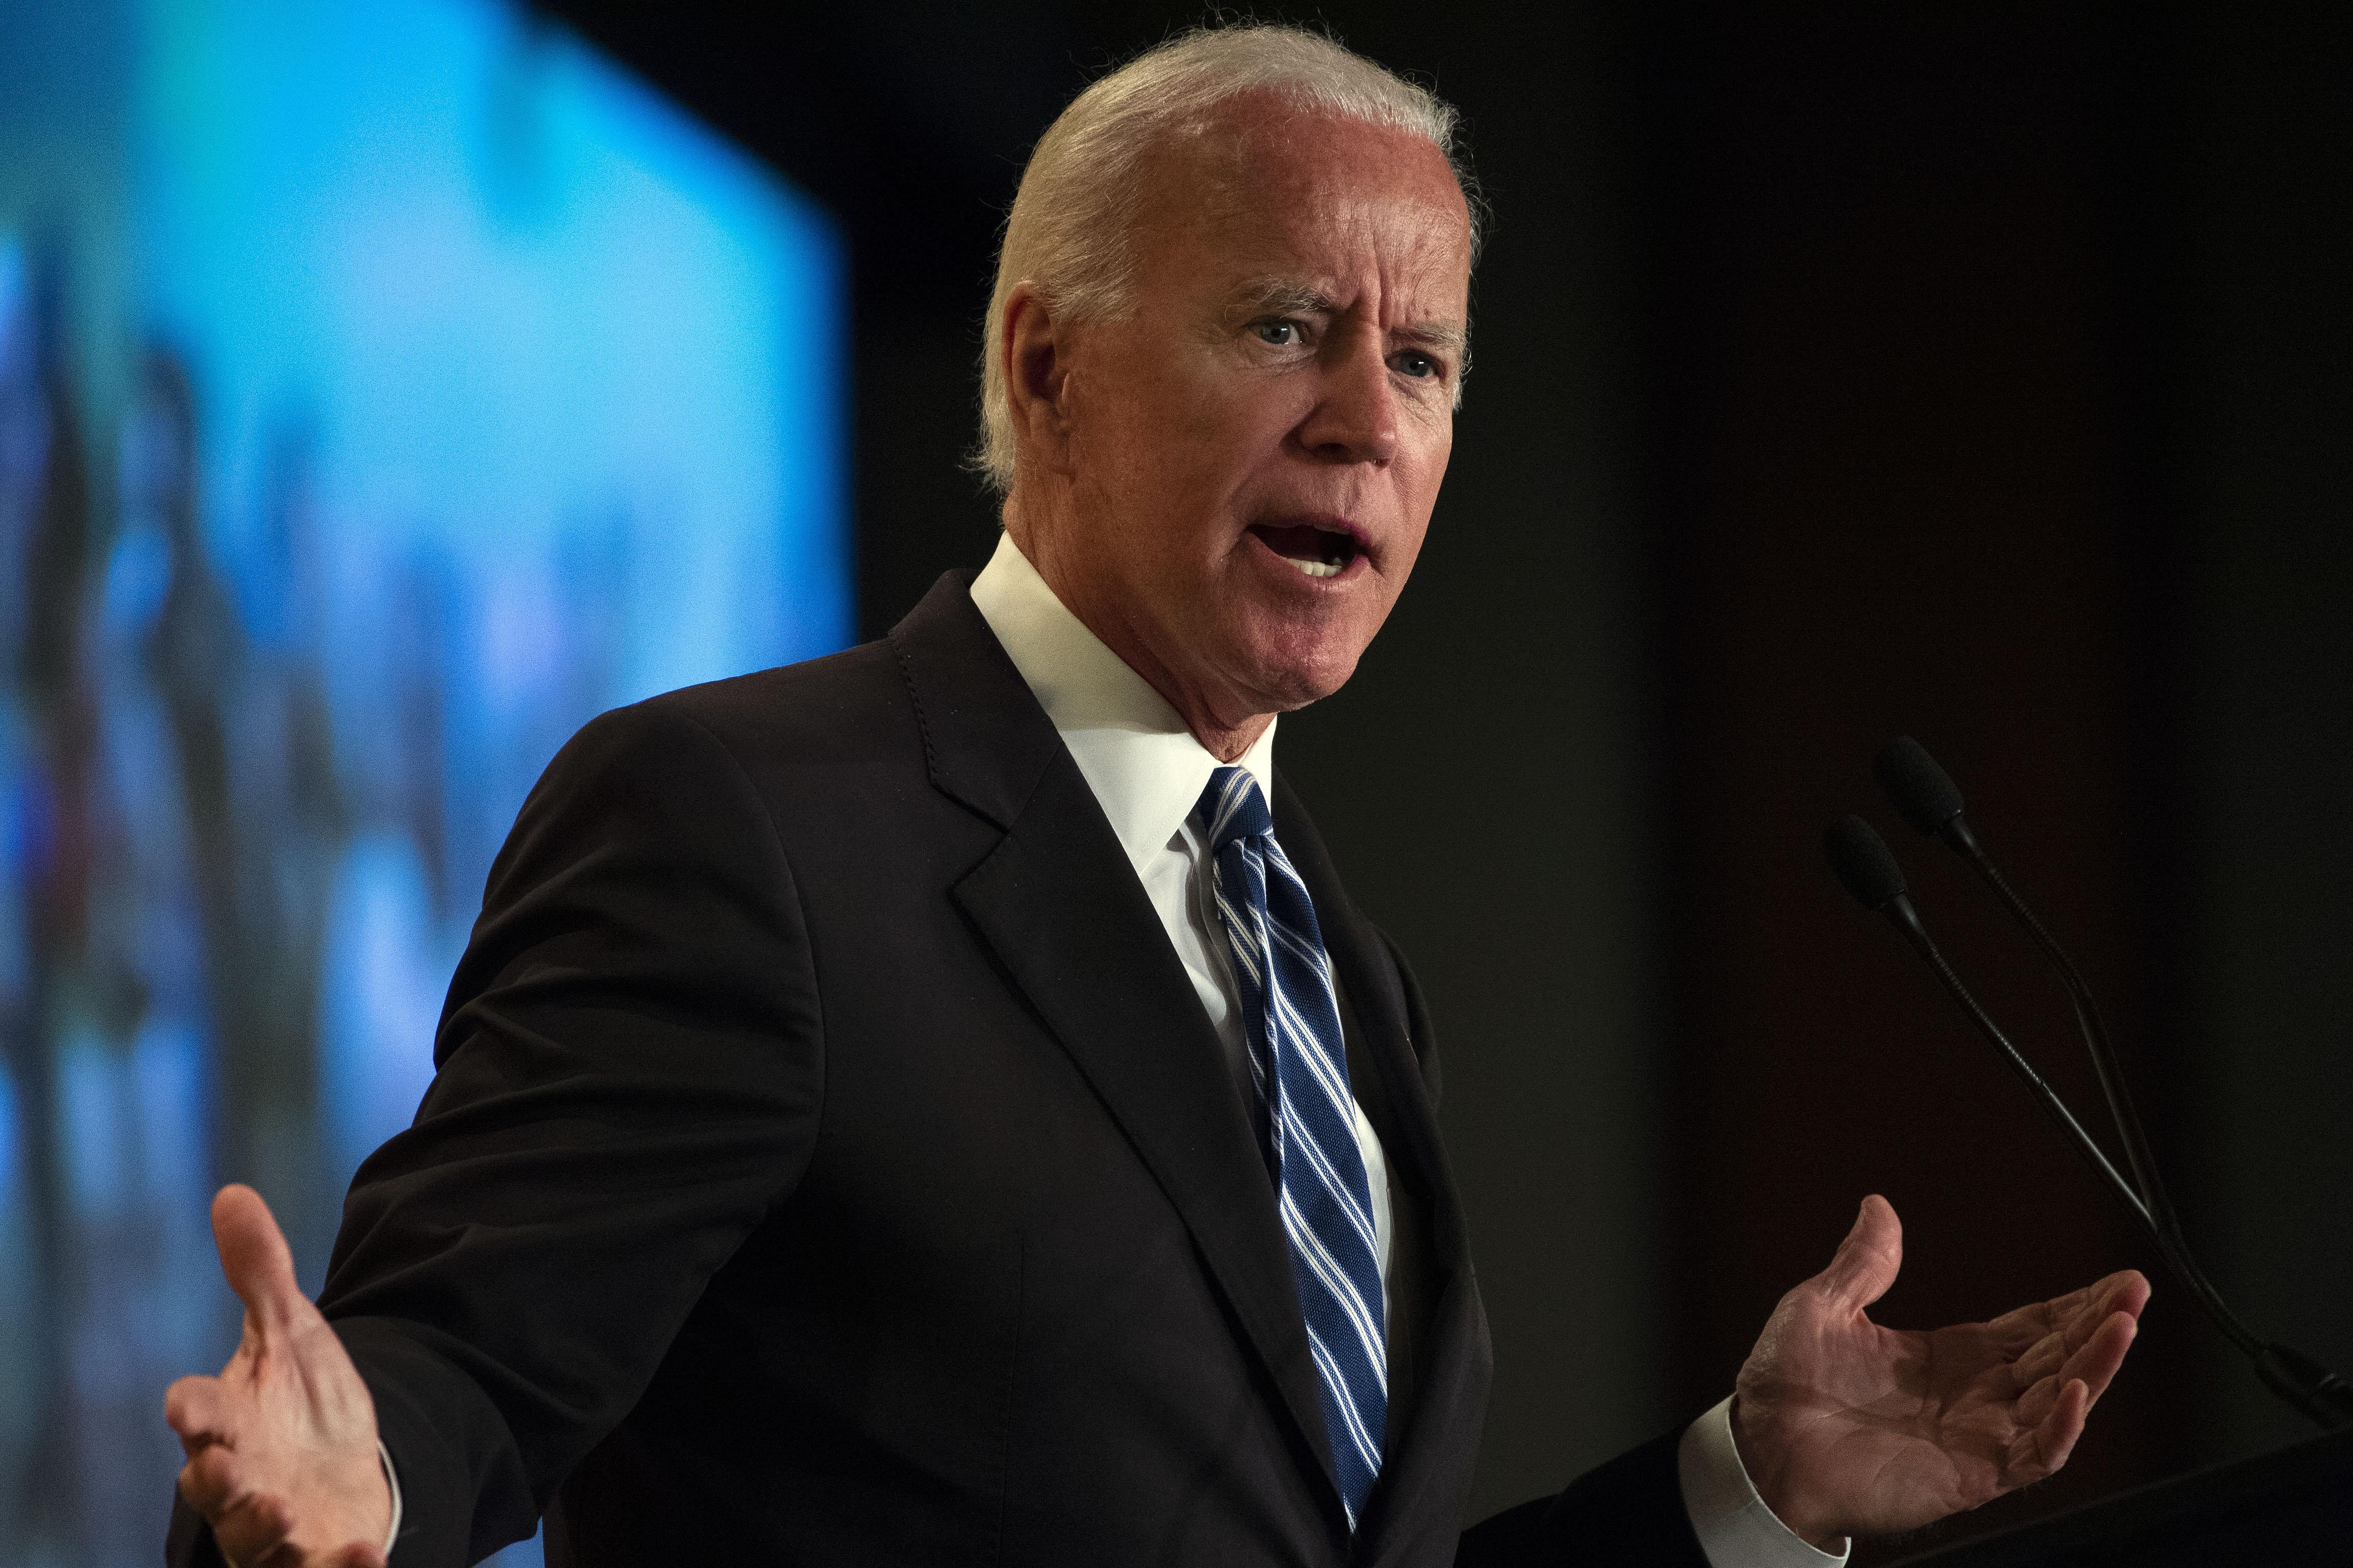 Joe Biden shrugs while speaking at a podium.